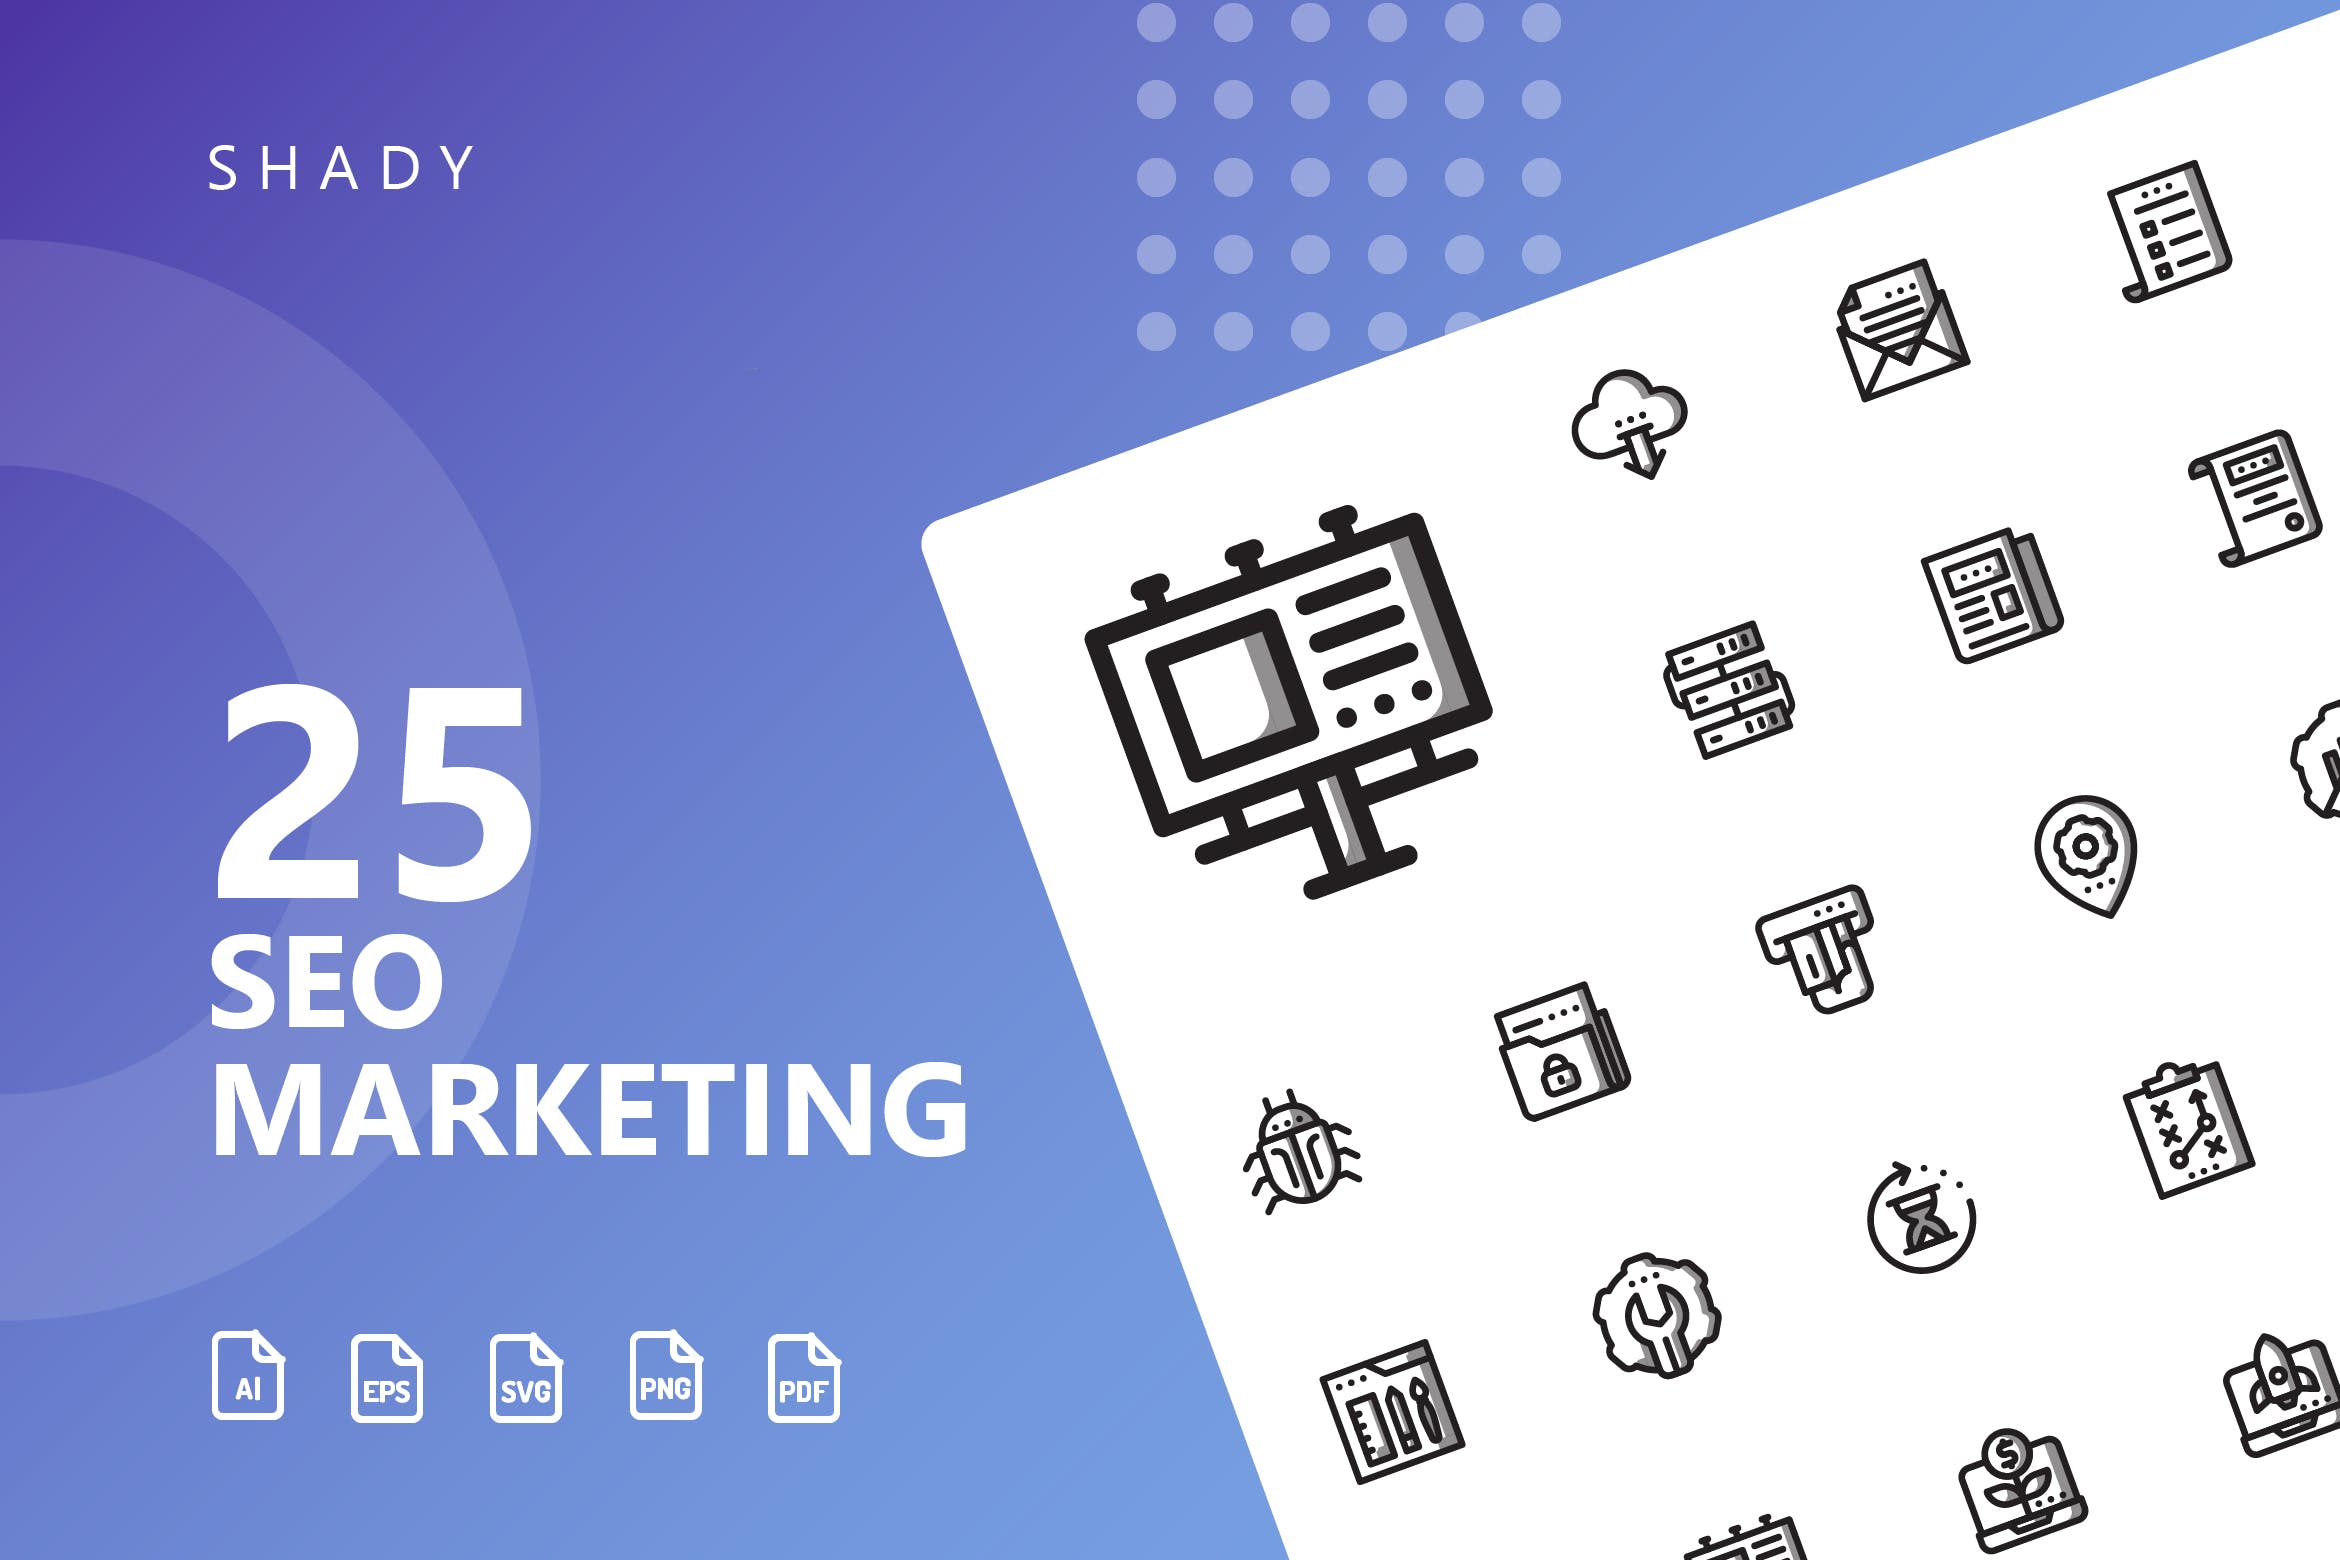 25枚SEO搜索引擎优化营销矢量阴影蚂蚁素材精选图标v1 SEO Marketing Shady Icons插图